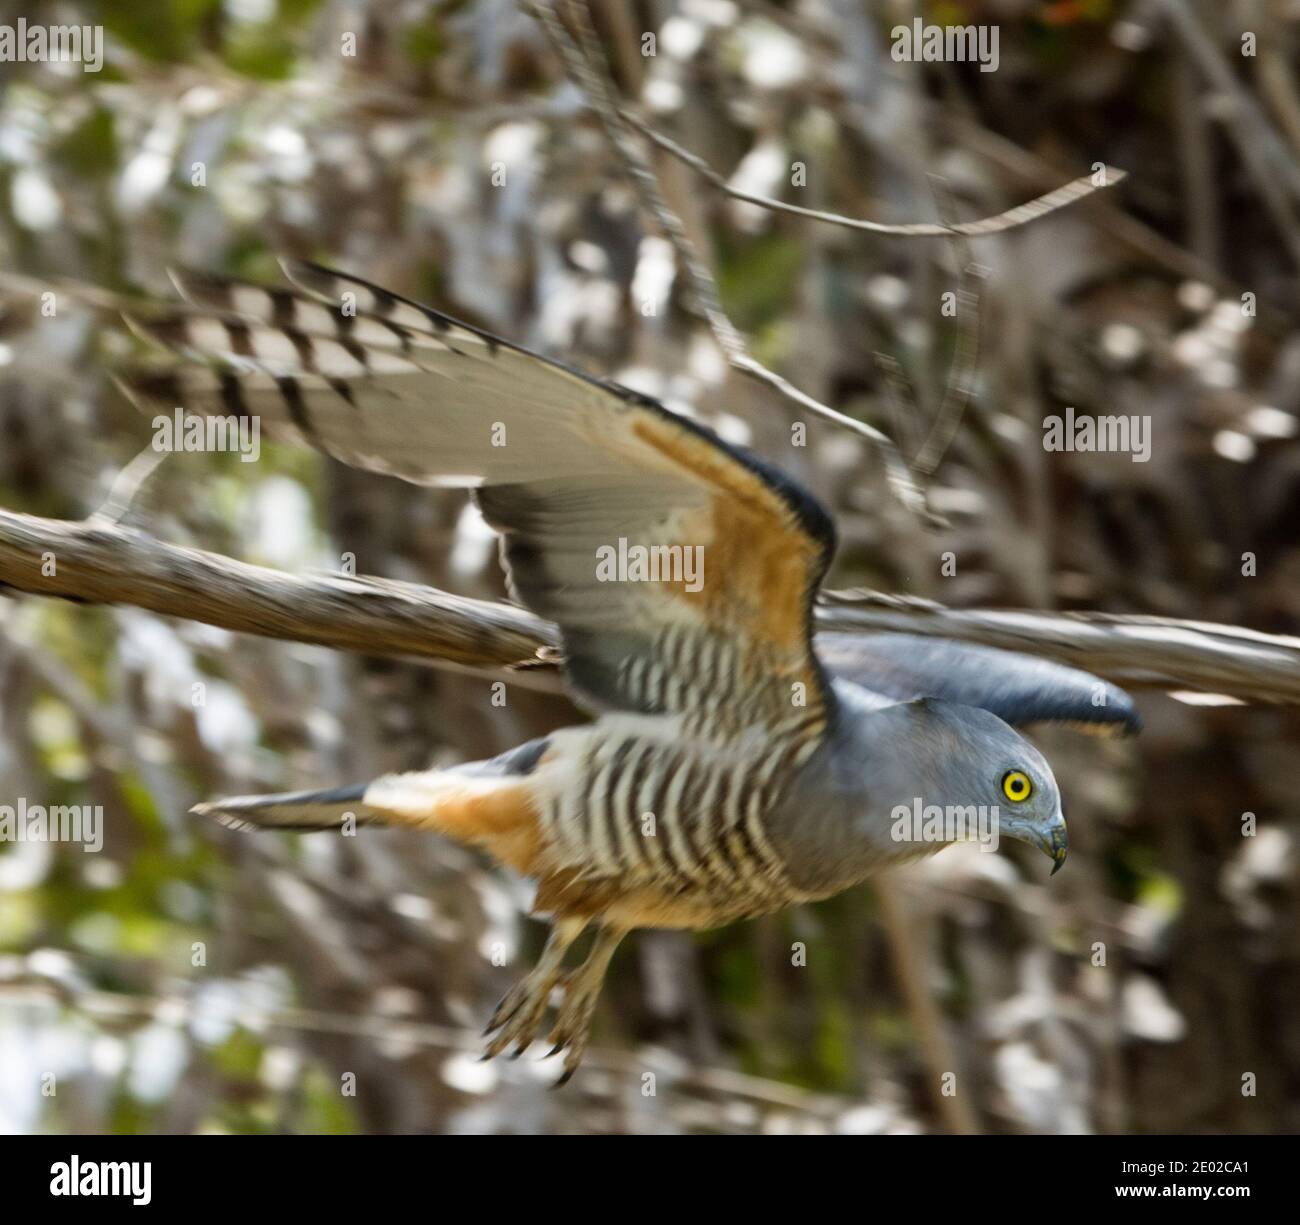 Pacific Baza / Crested Hawk, Aviceda subcristata, in flight in Queensland Australia Stock Photo